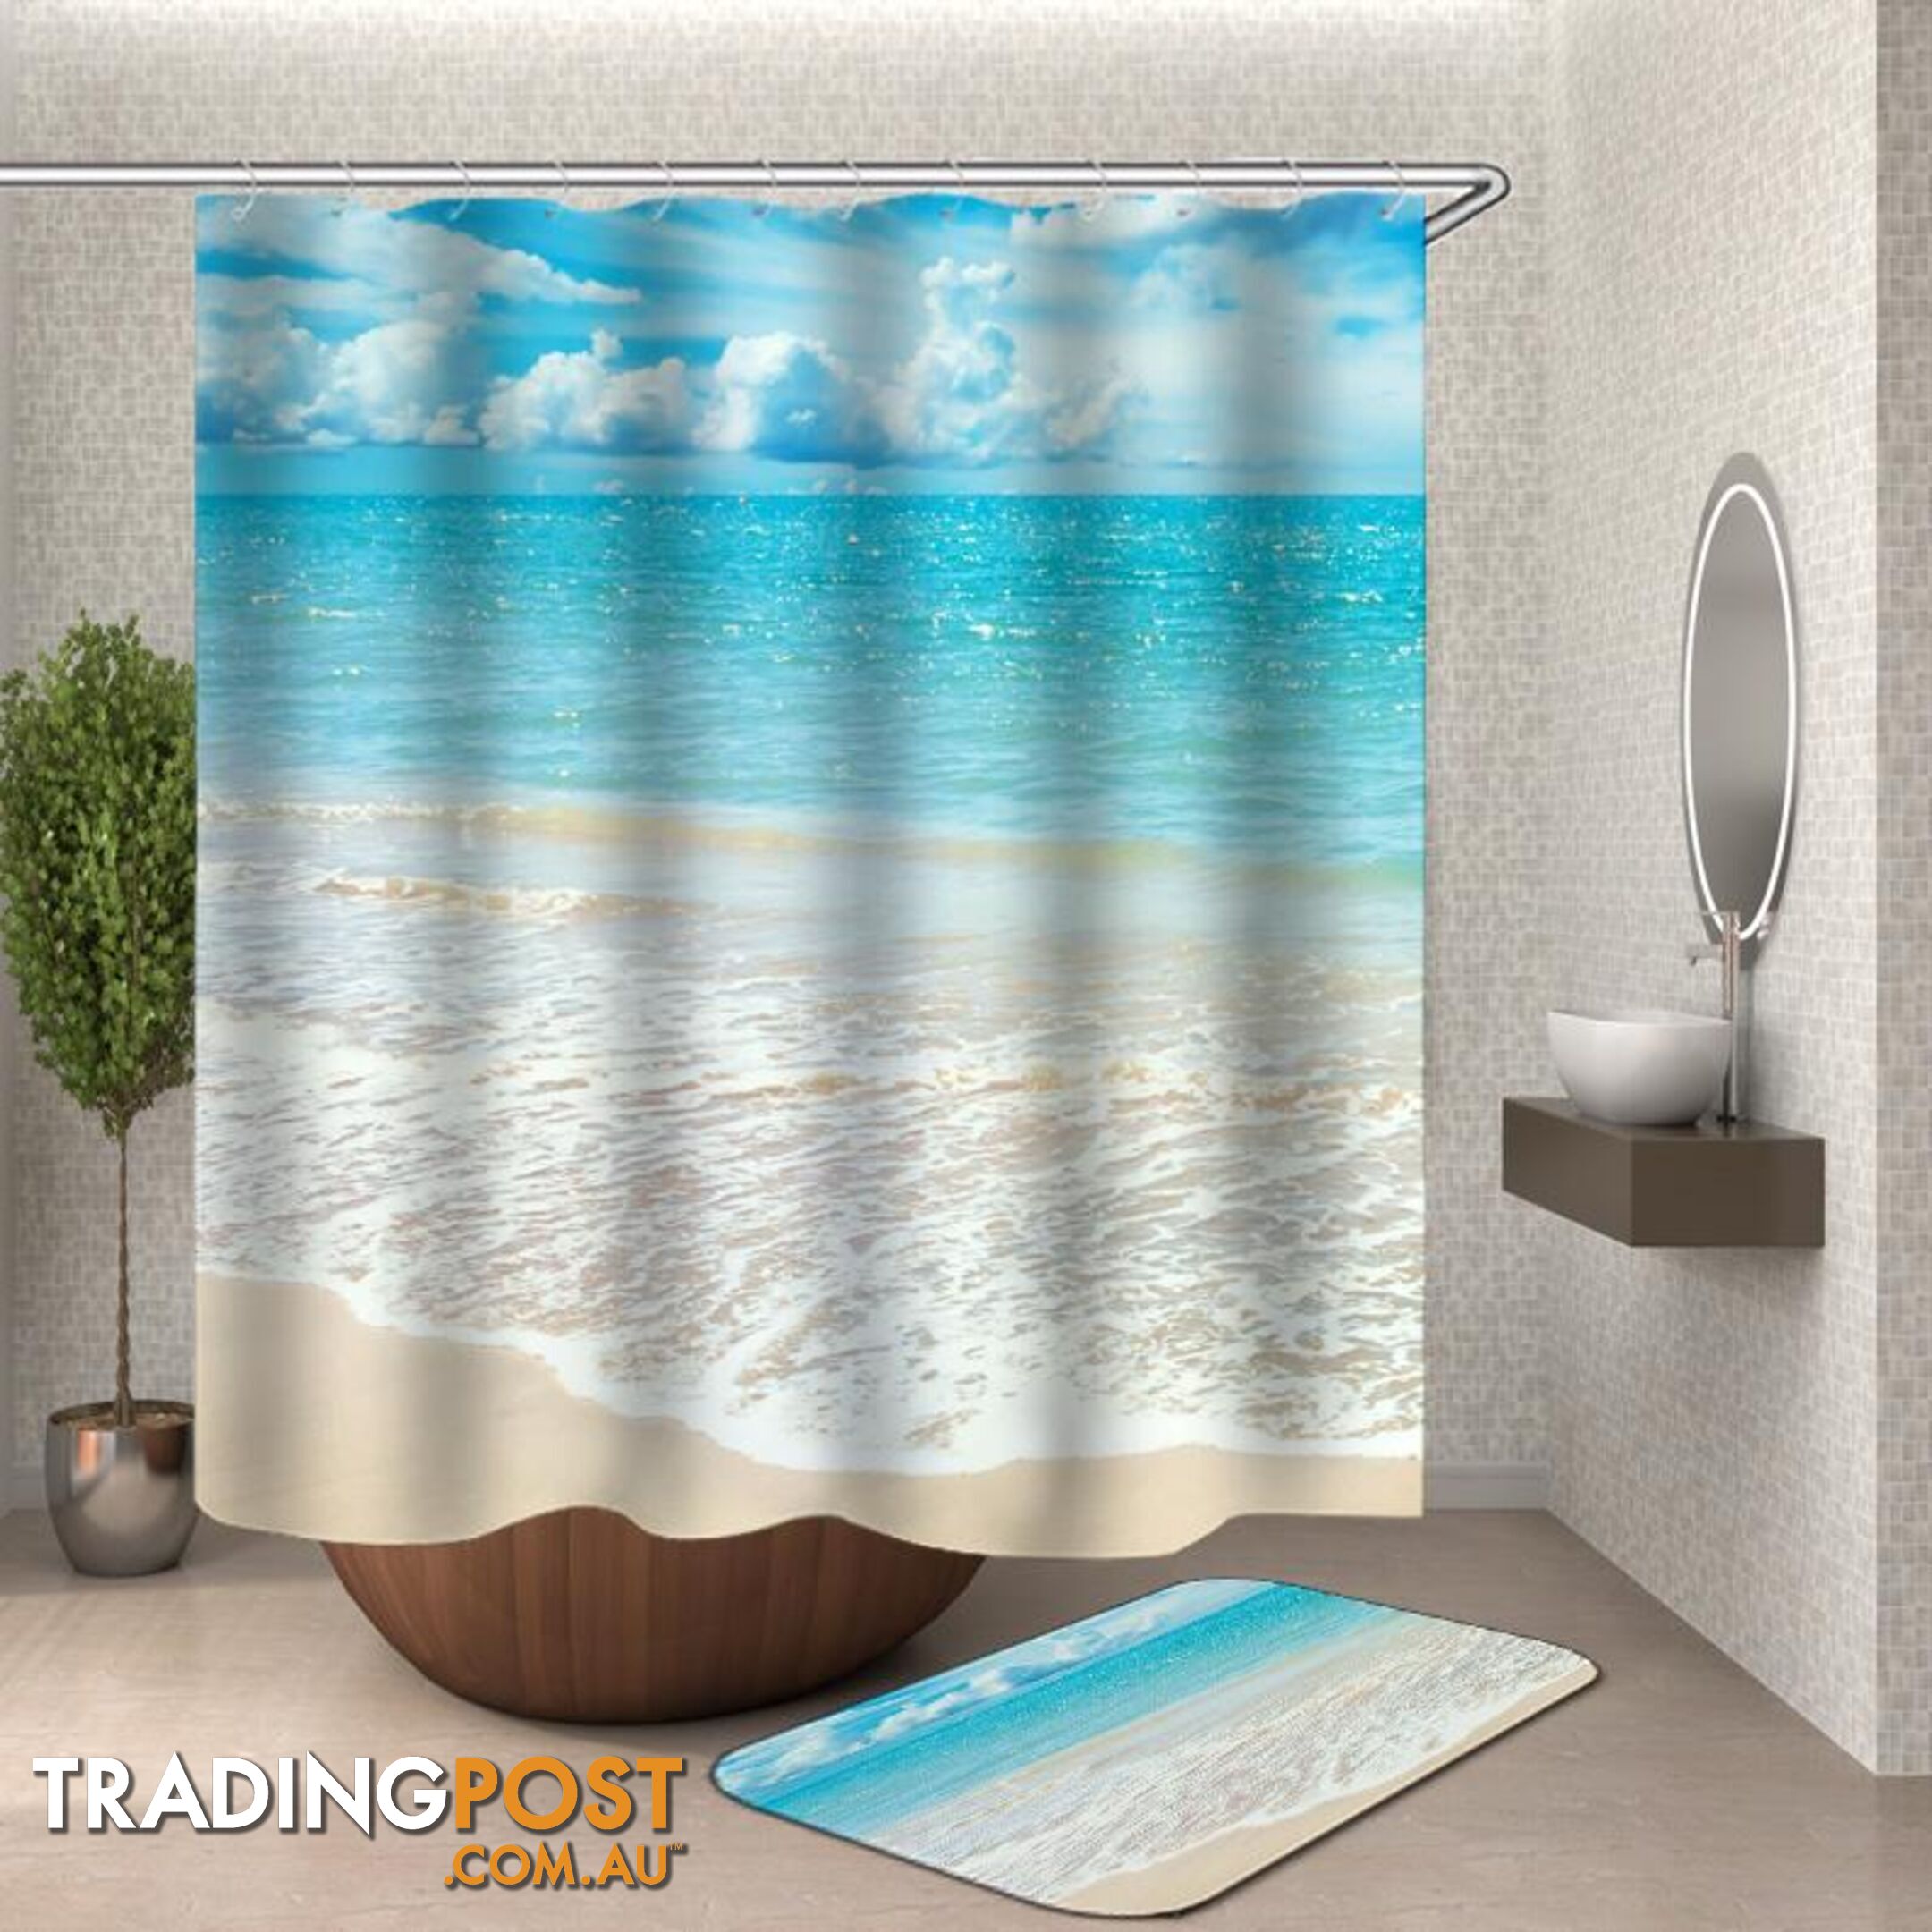 Quiet Beach Shower Curtain - Curtain - 7427046124683